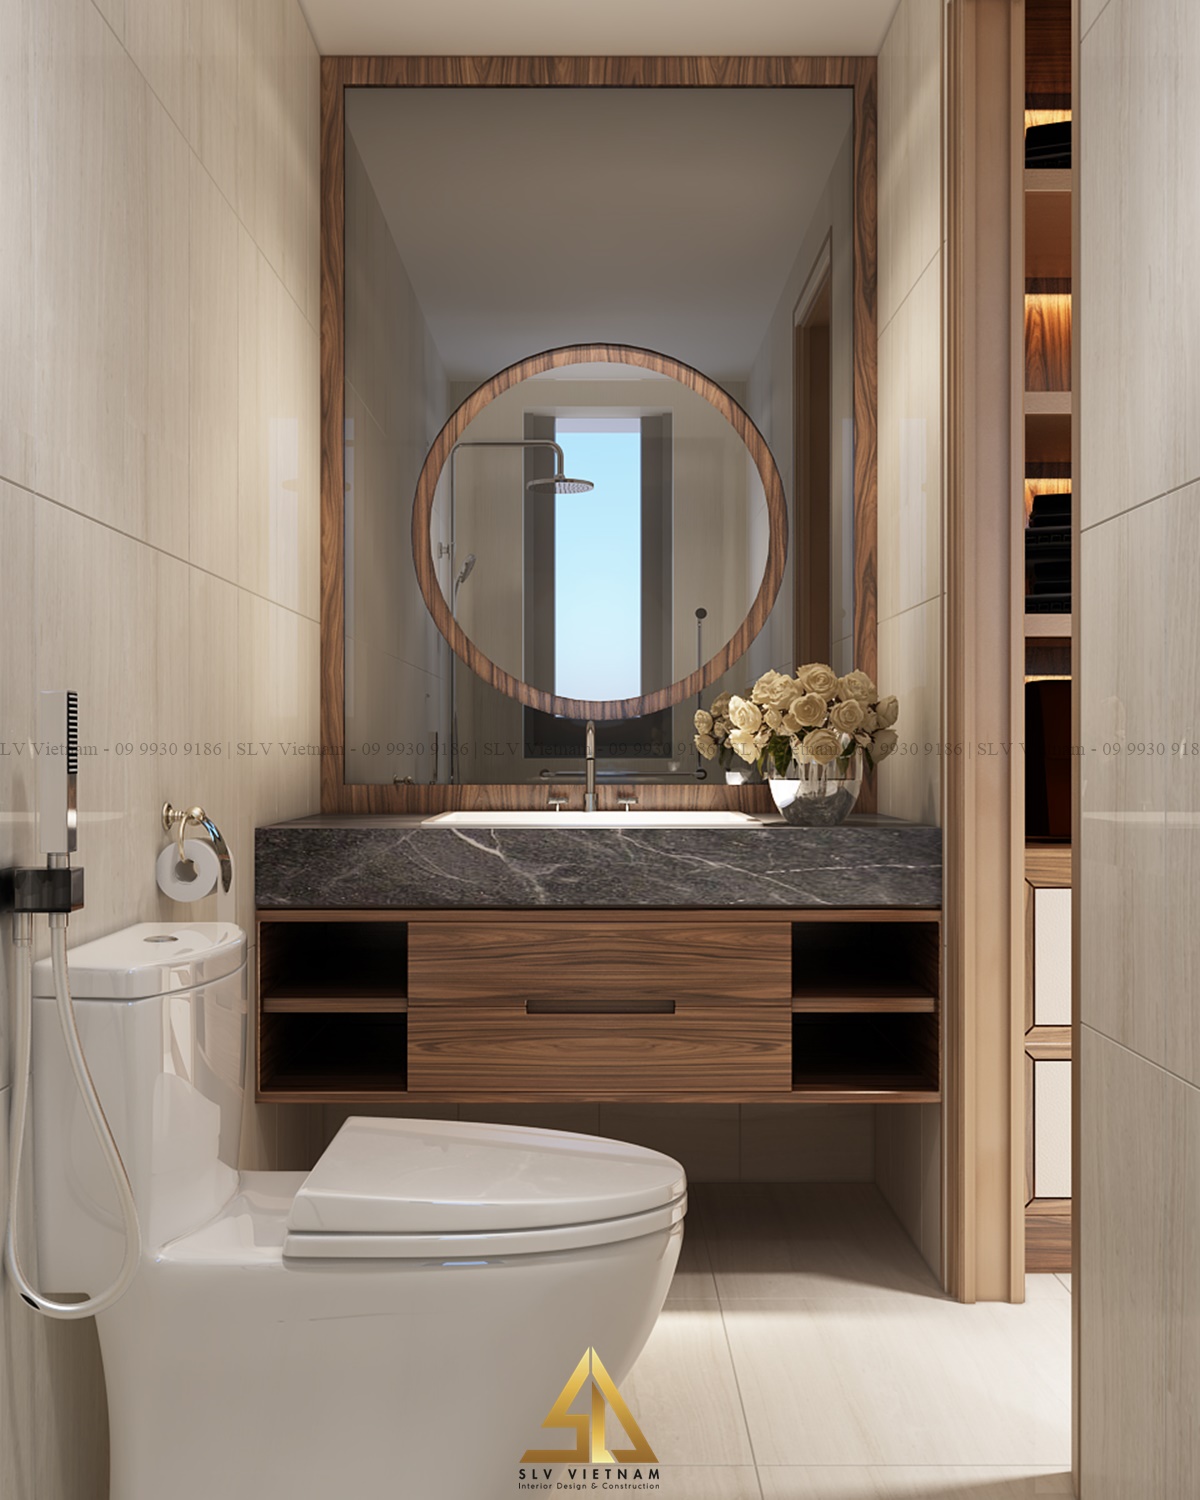 Sự kết hợp giữa gỗ và đá tự nhiên tạo nên không gian nội thất nhà tắm độc đáo và ấn tượng (Dự án của SLV Vietnam)